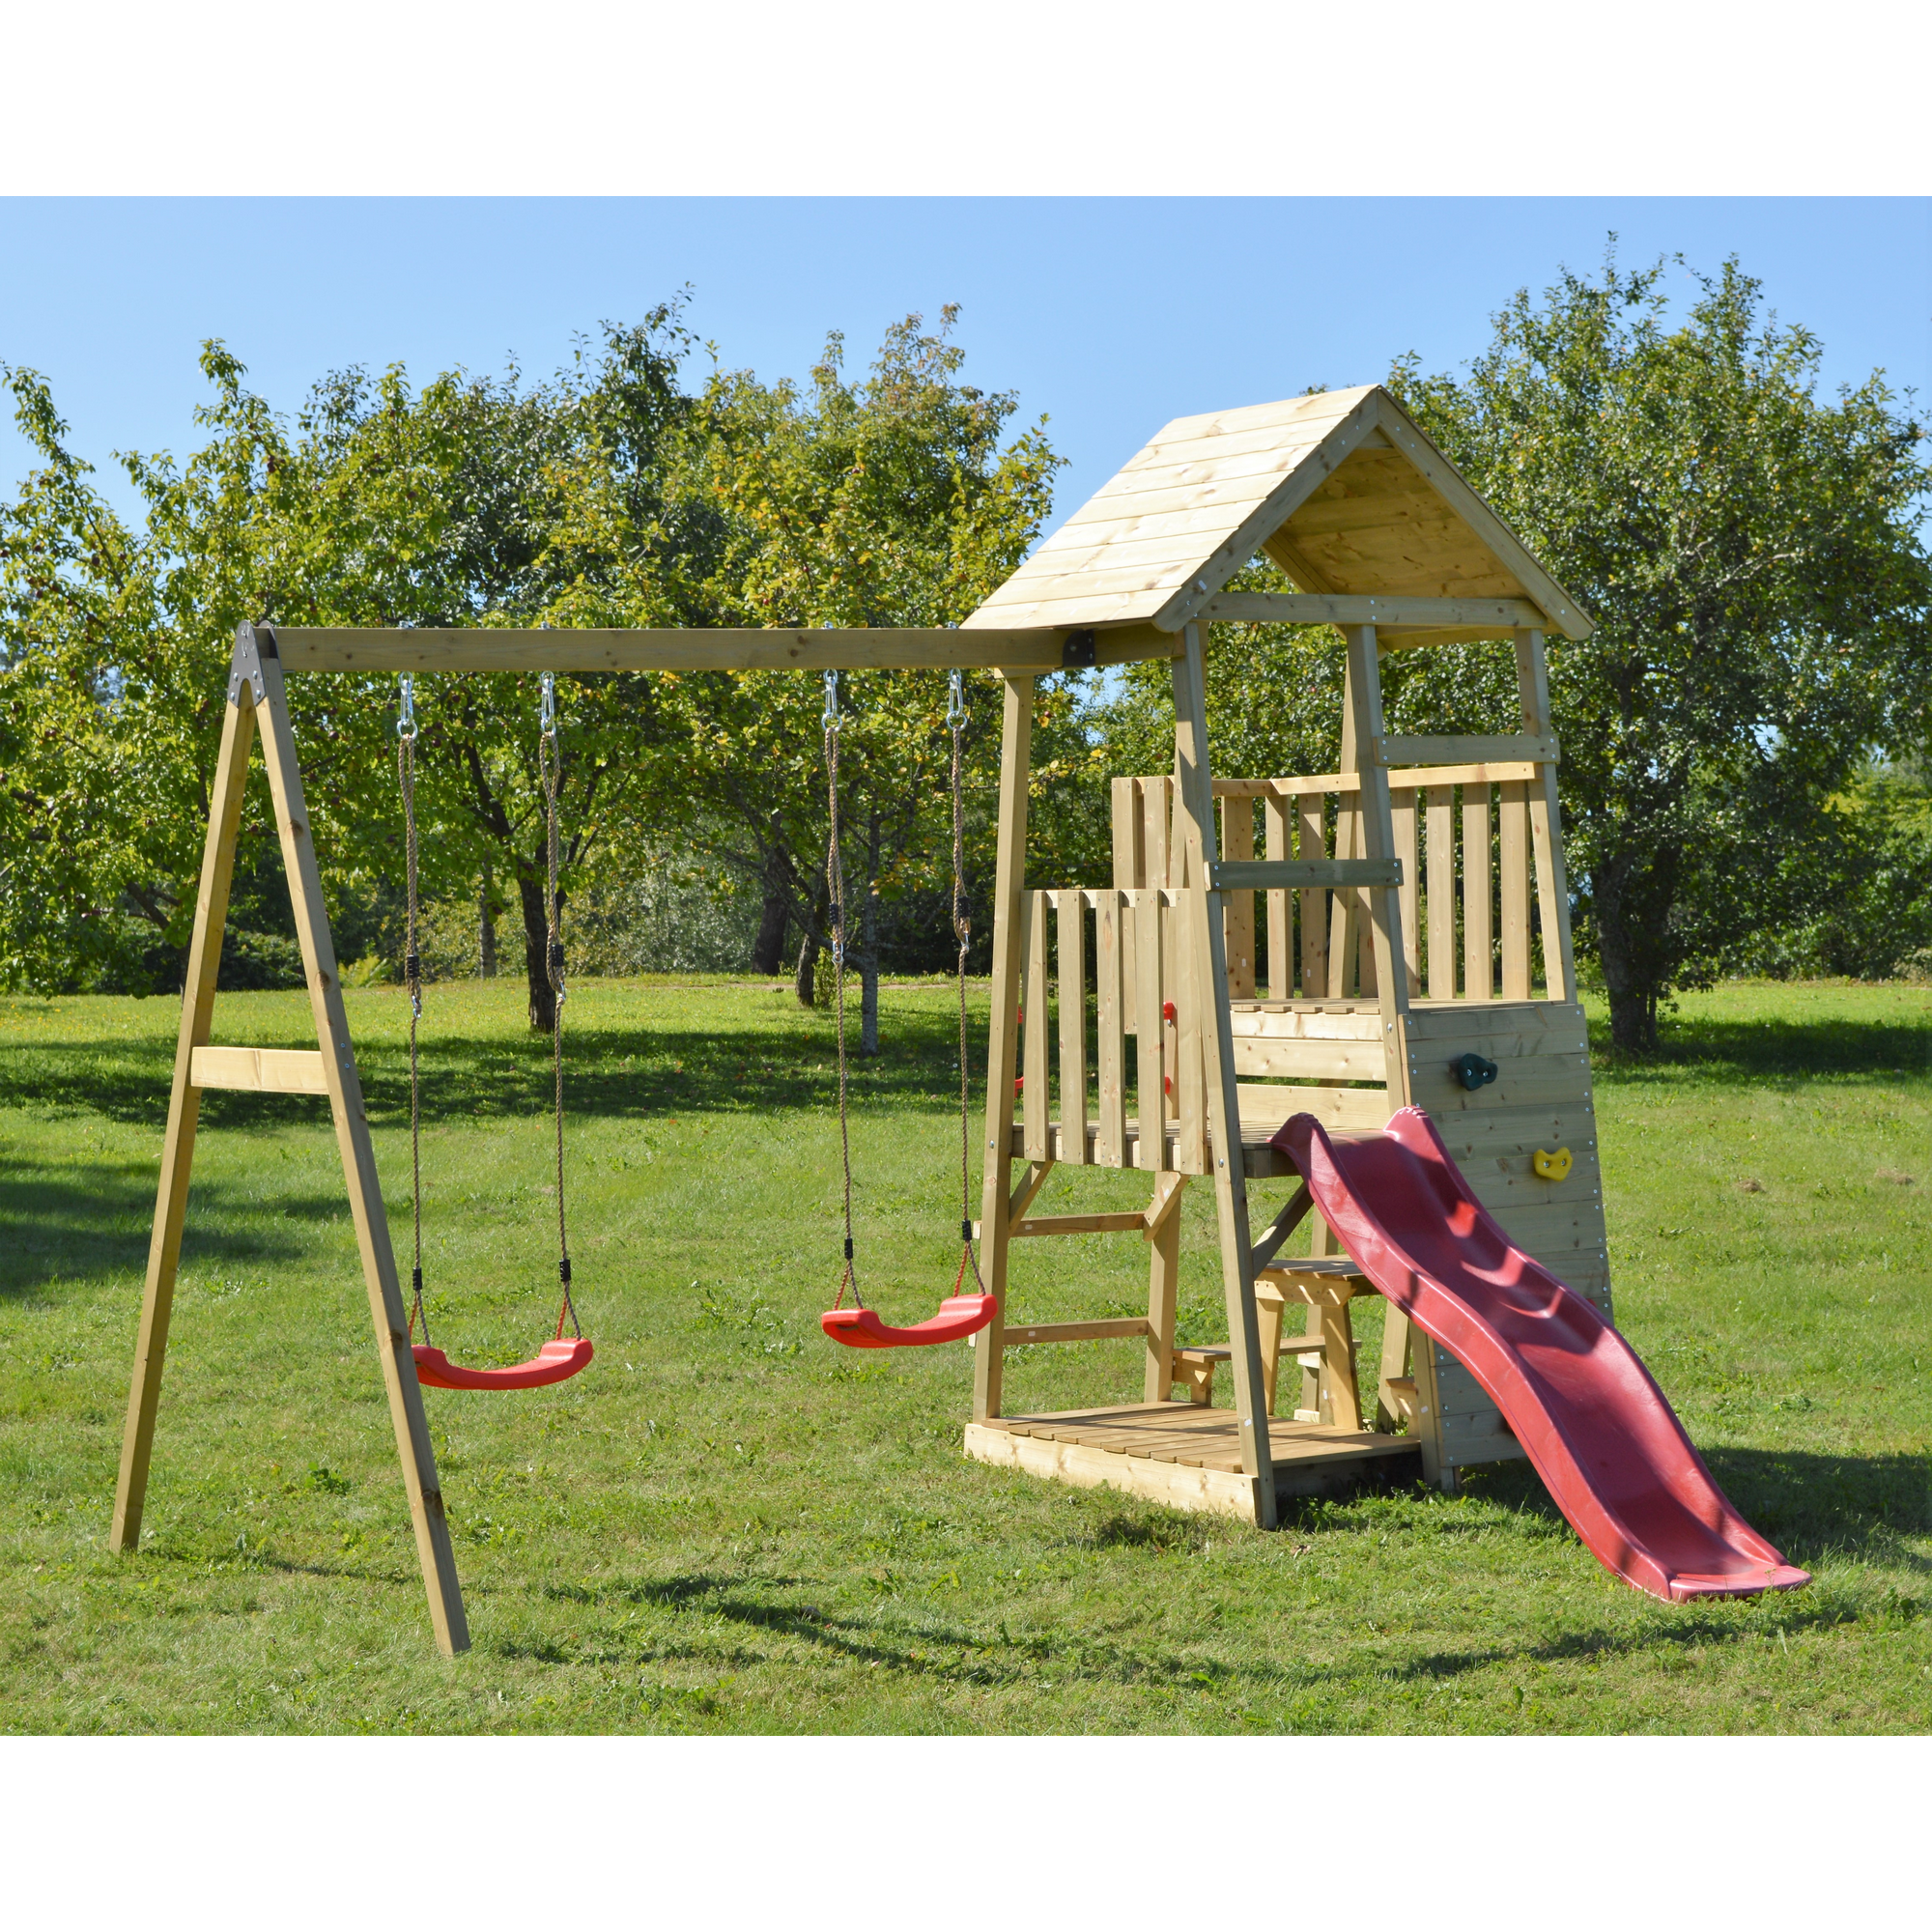 Holz-Spielturm 'Flamingo' natur Rutsche, Kletterwand, 2 Schaukeln und Picknicktisch 280 x 340 x 270 cm + product picture